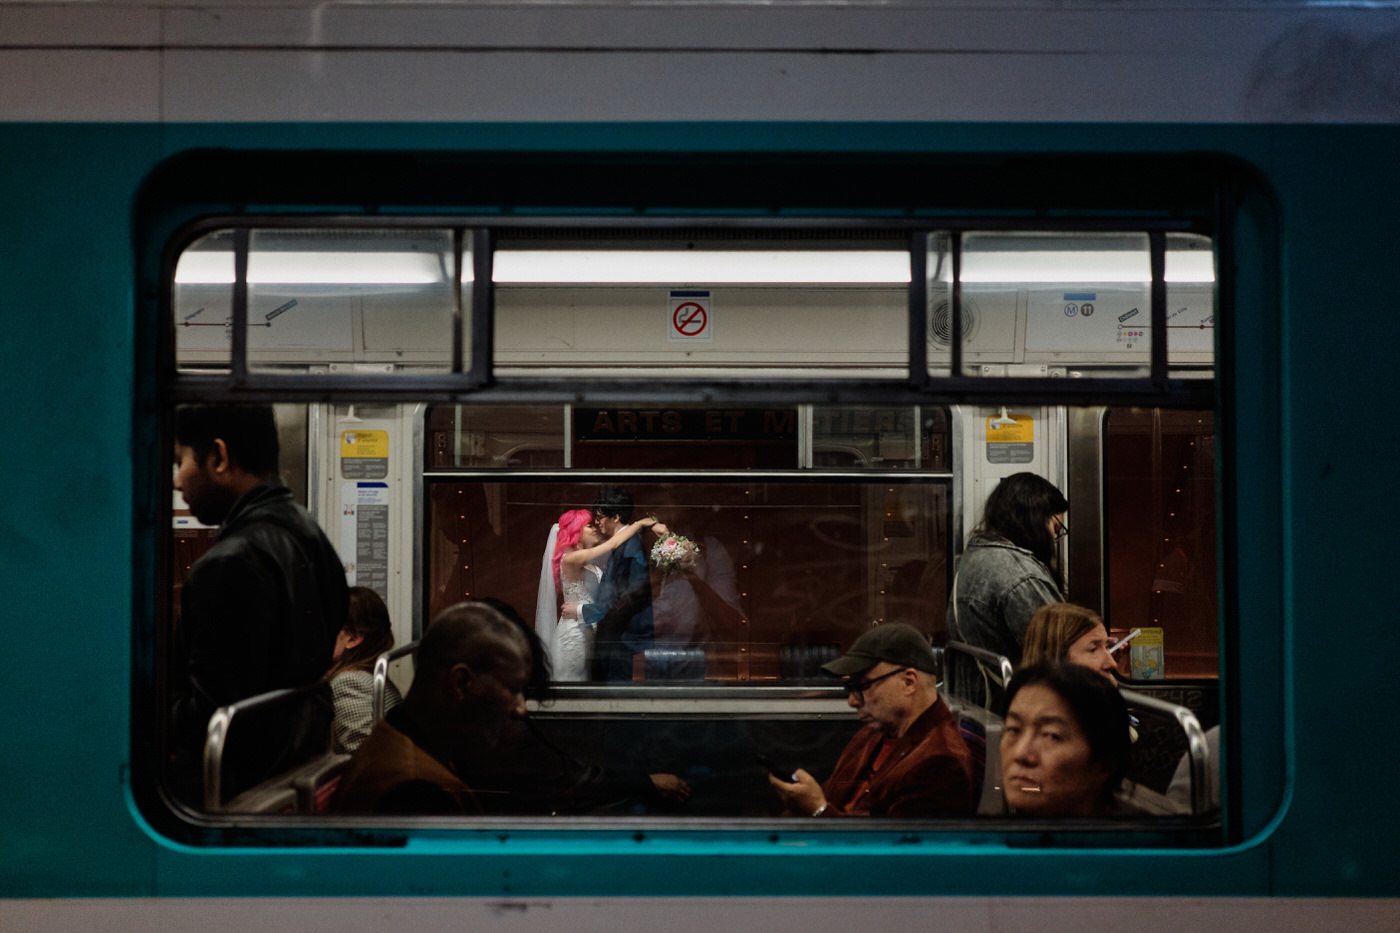 photo de couple prise au travers une rame de métro parisien. On voit les gens dans le métro au premier plan